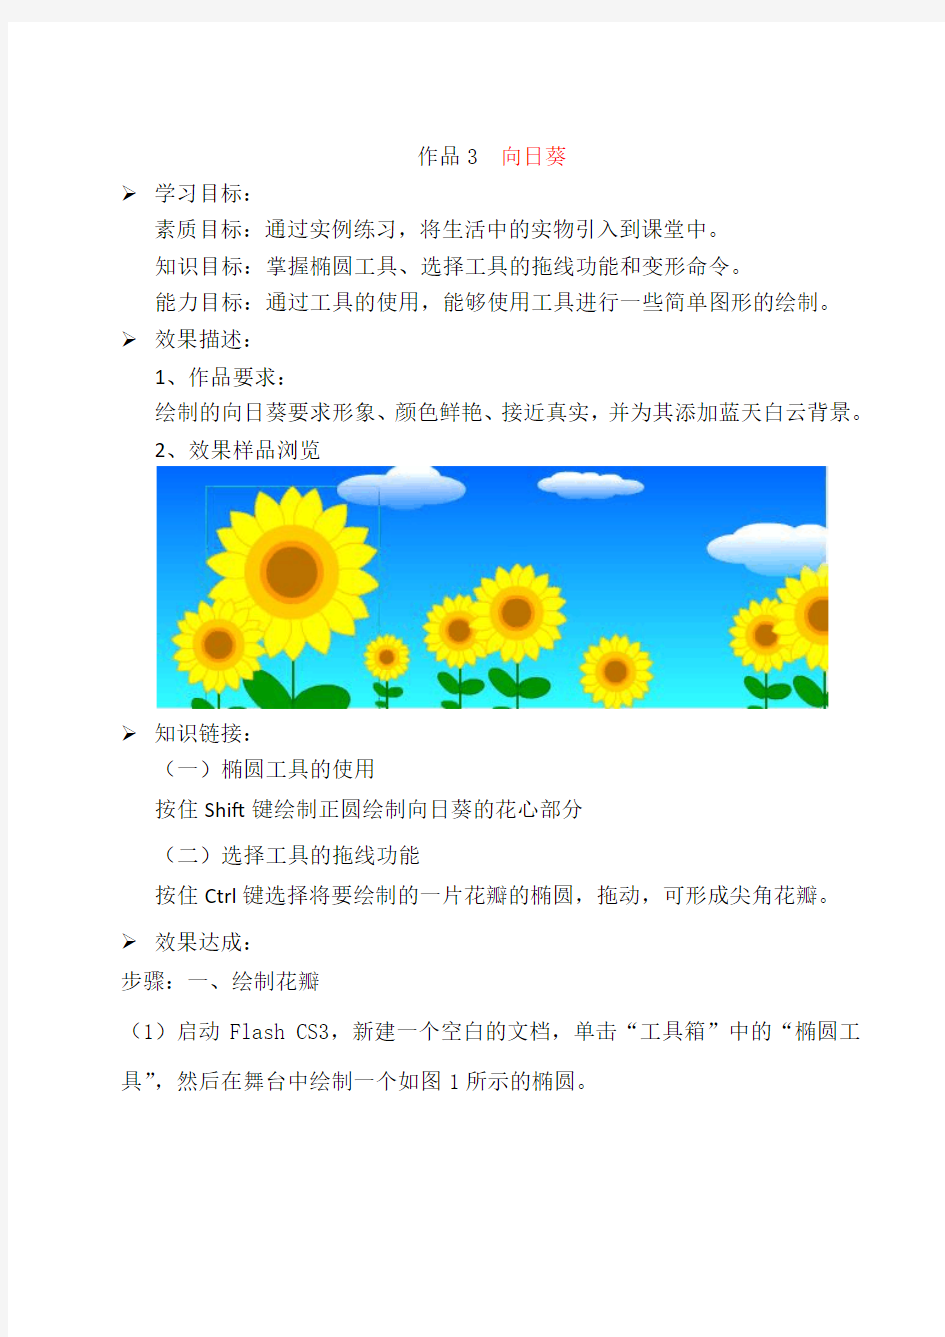 flash鼠绘教程_绘制向日葵